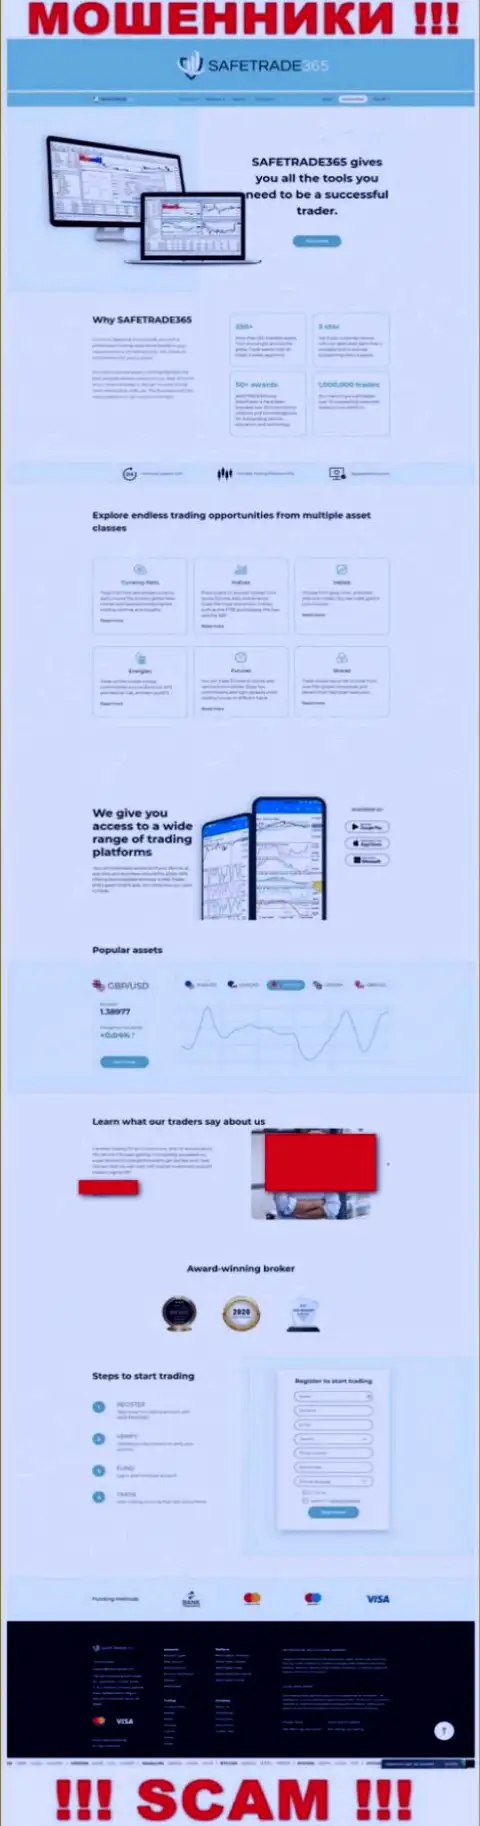 Скриншот официального информационного ресурса противозаконно действующей конторы SafeTrade 365